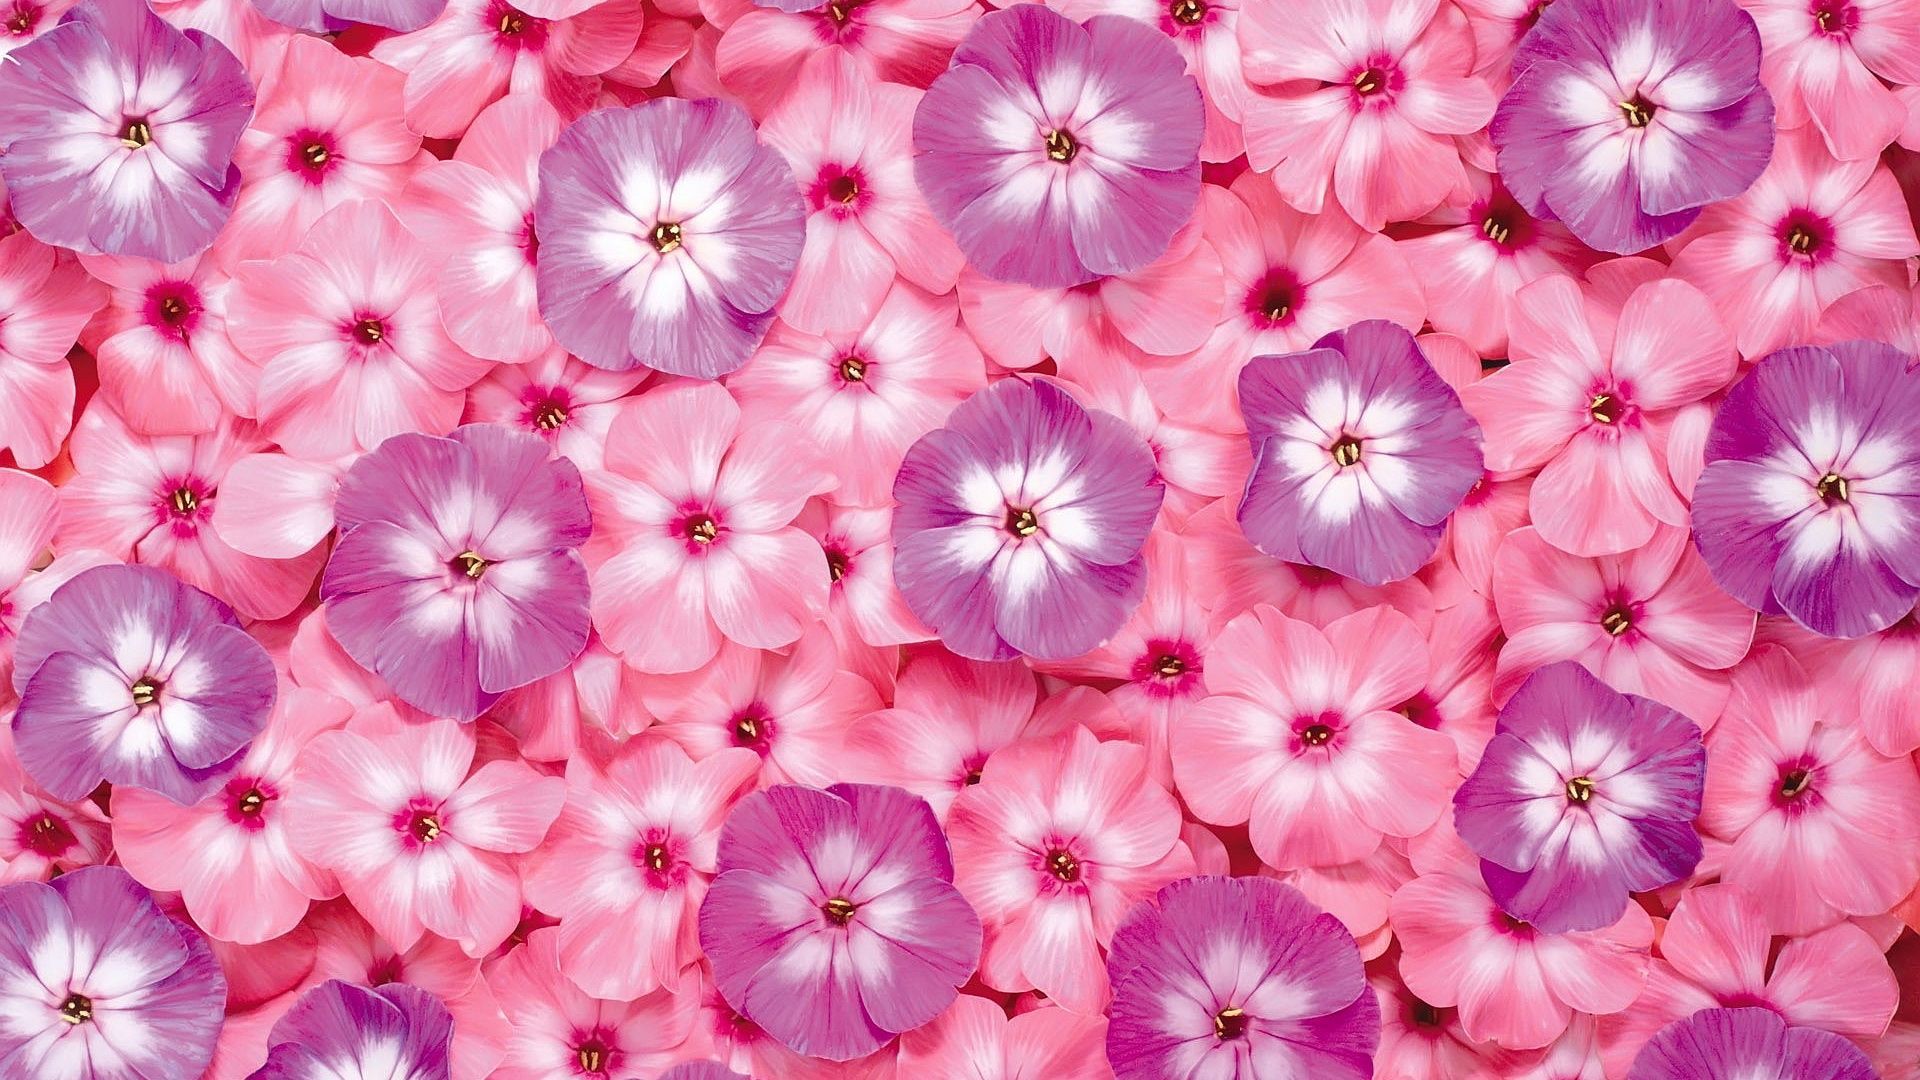 water drop on pink flower new desktop wallpaper in hd full free ...